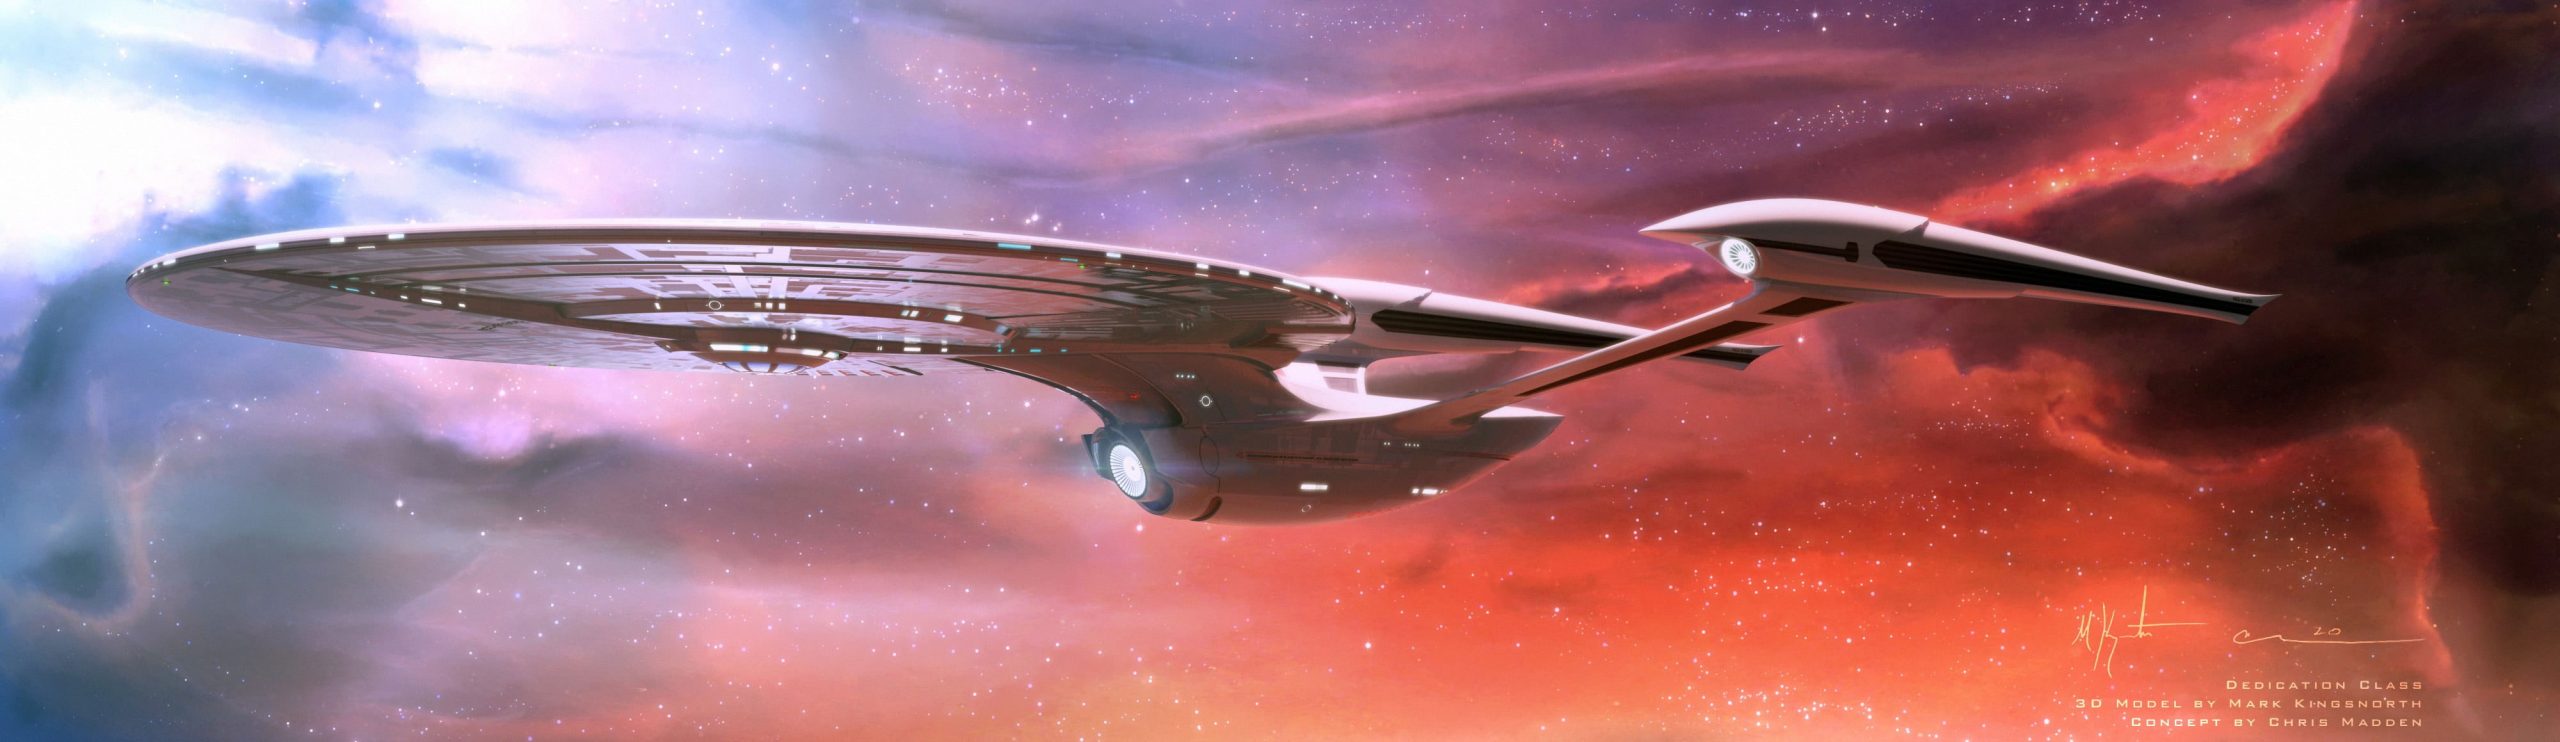 Wallpaper Battleship Poster, Star Trek, Uss Enterprise